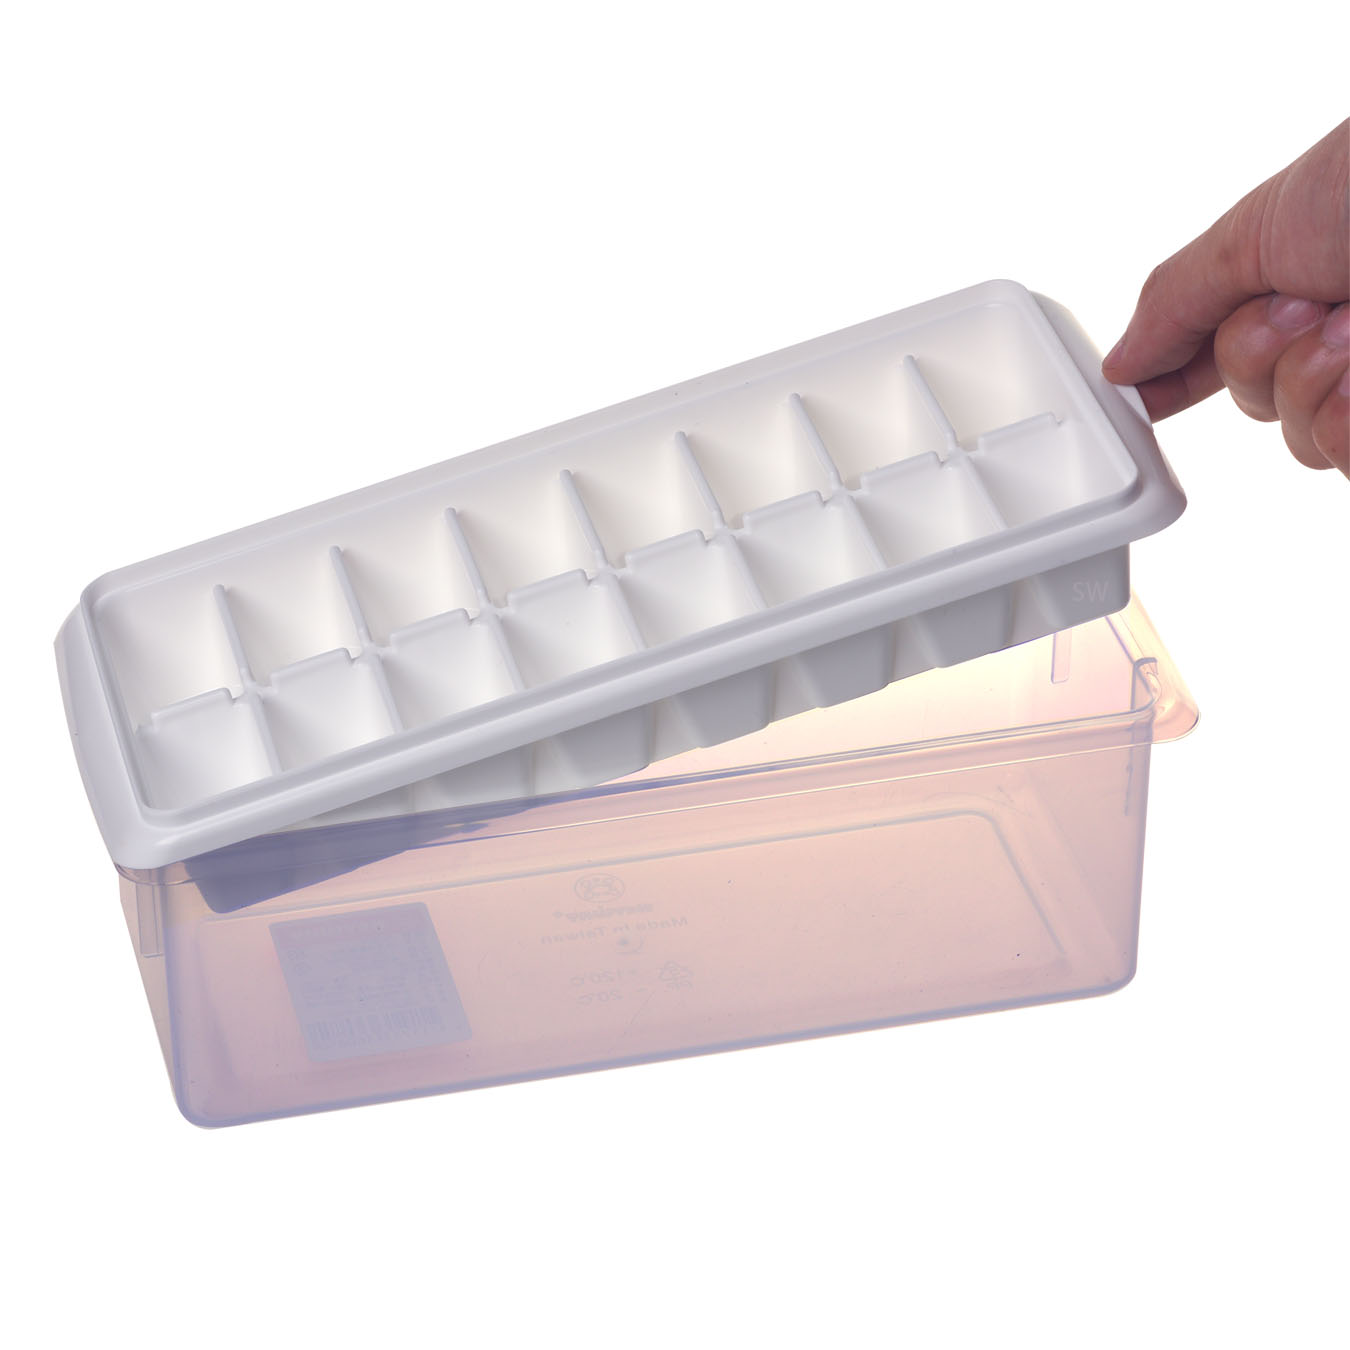 P5-0076冰島高級製冰盒